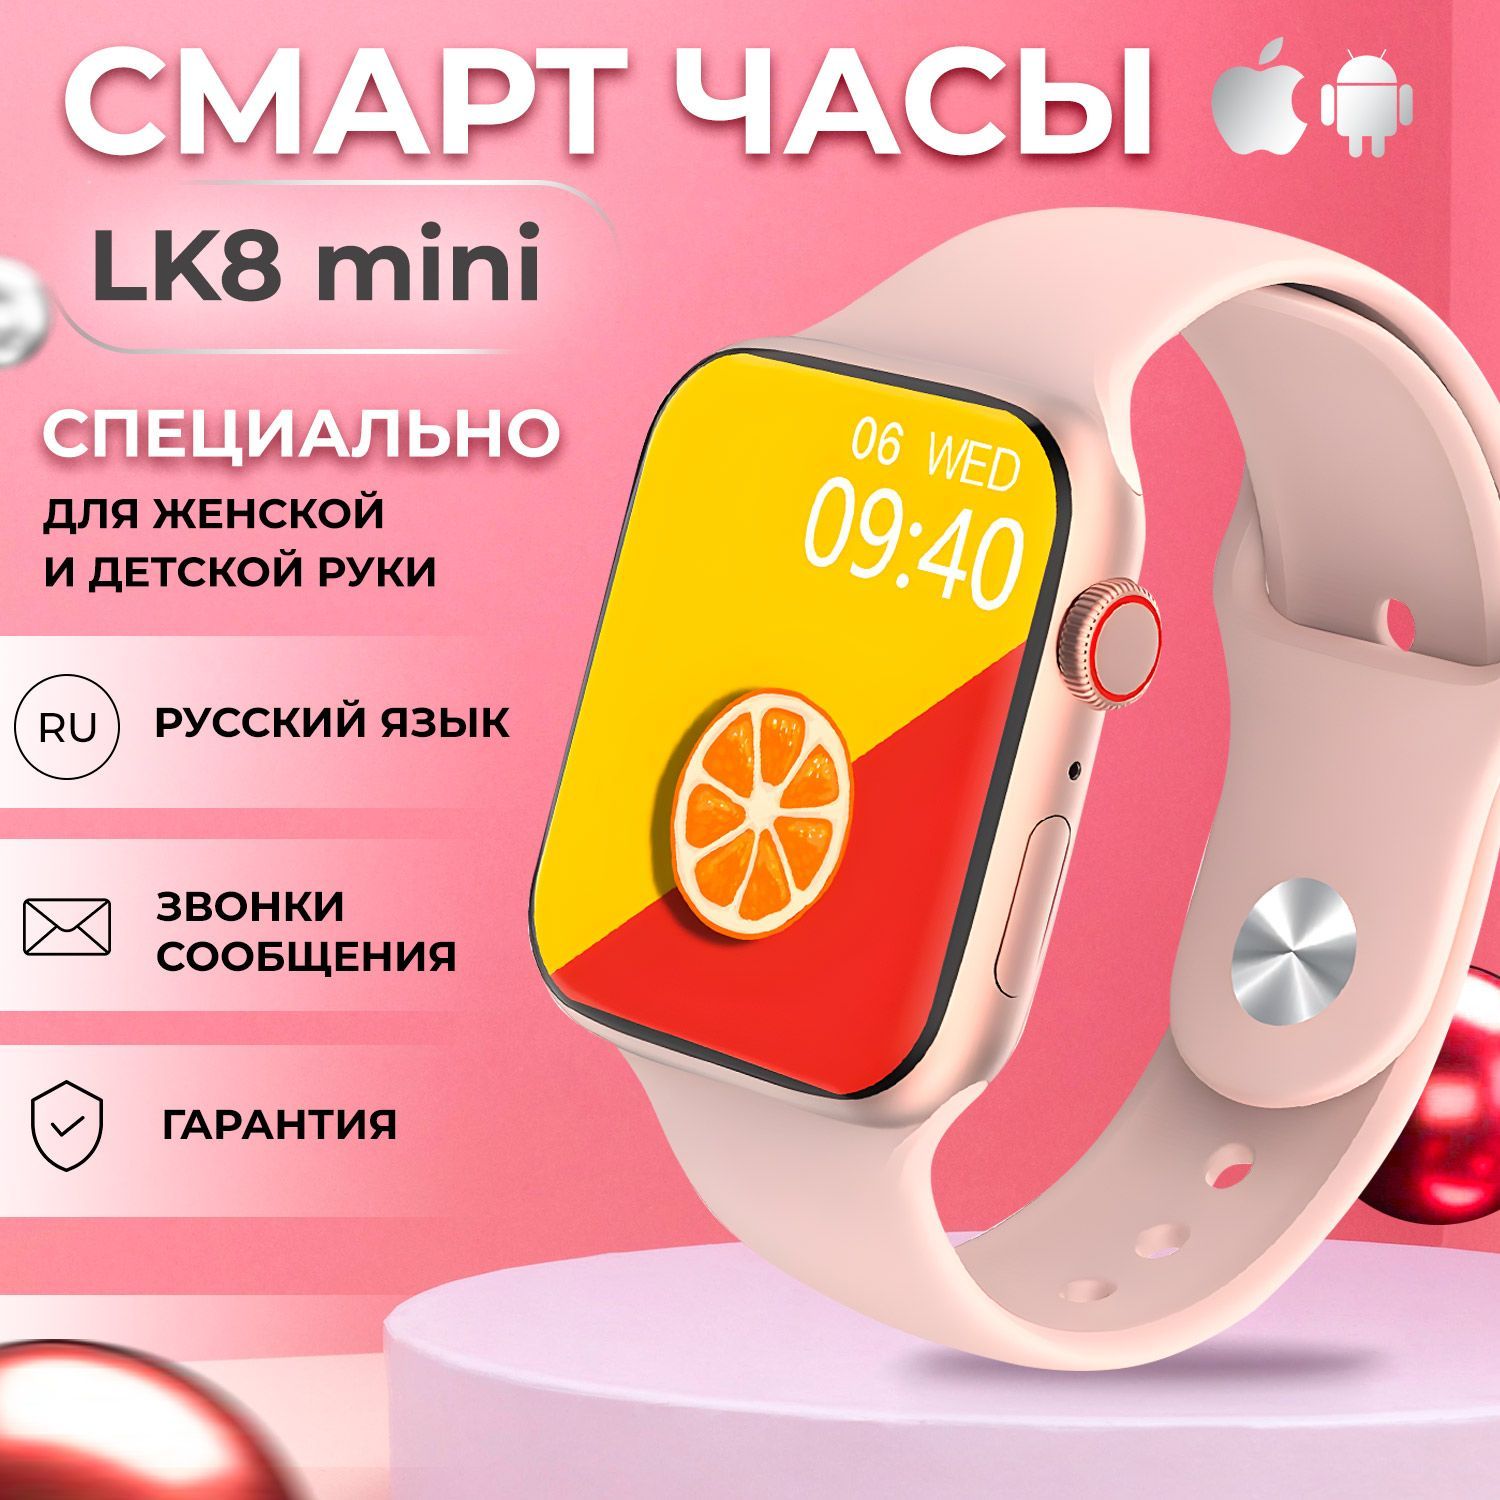 Смарт часы lk 8. LK 8 Mini Smart watch. Детские смарт часы lk9 Mini или lk8 Mini. Smart watch LK gt 4 Mini золотой. Смарт часы lk8 Mini или lk9 Mini какие лучше.